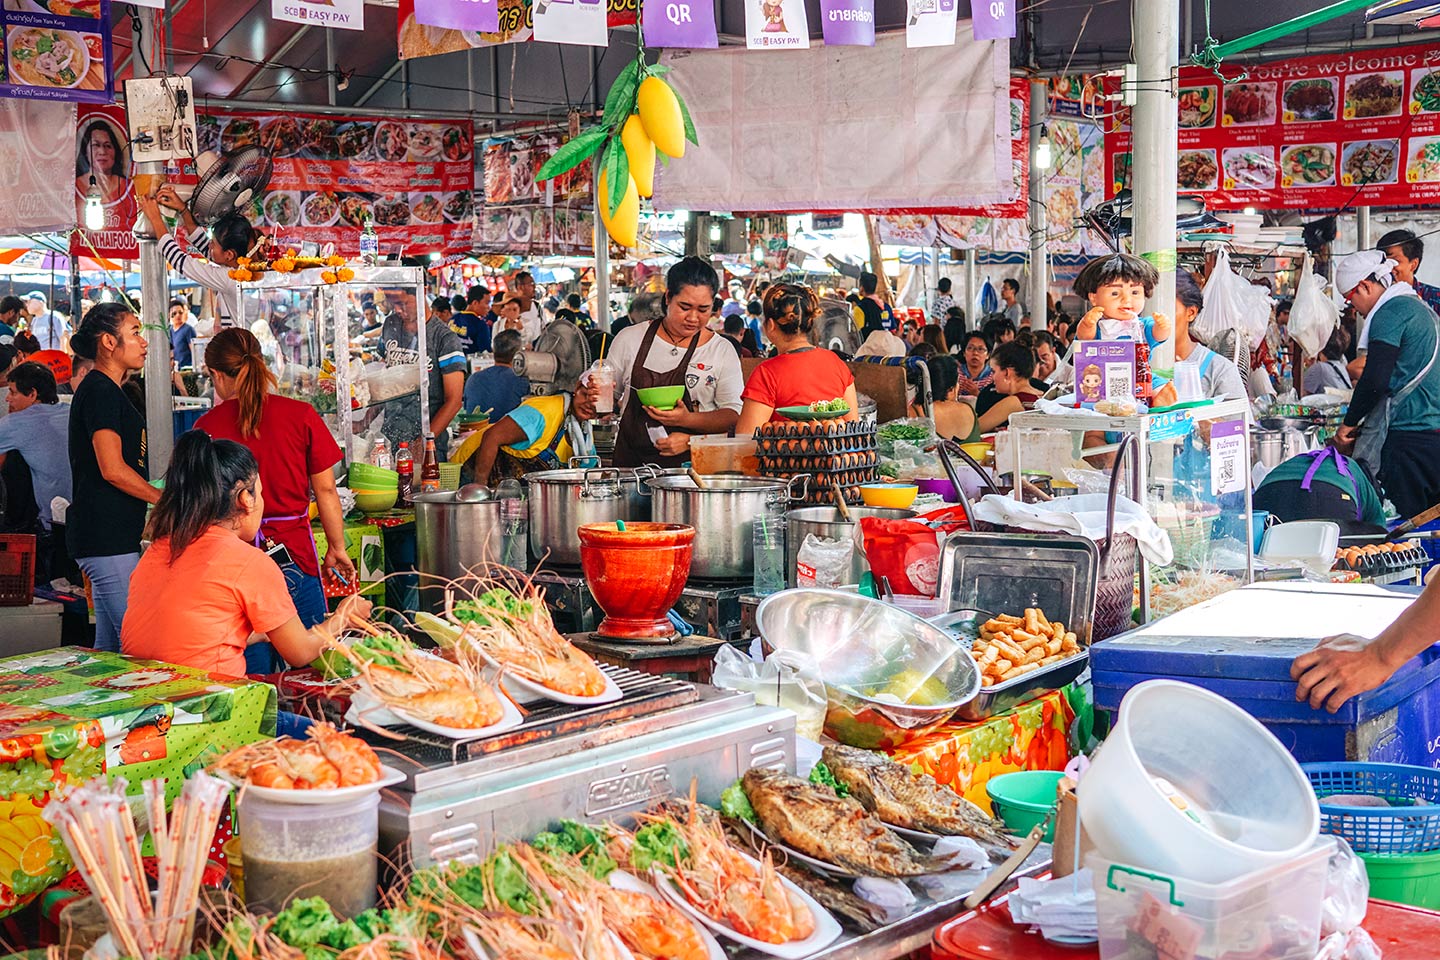  Chatuchak hétvégi piac Bangkokban - a végső útmutató blogbejegyzés